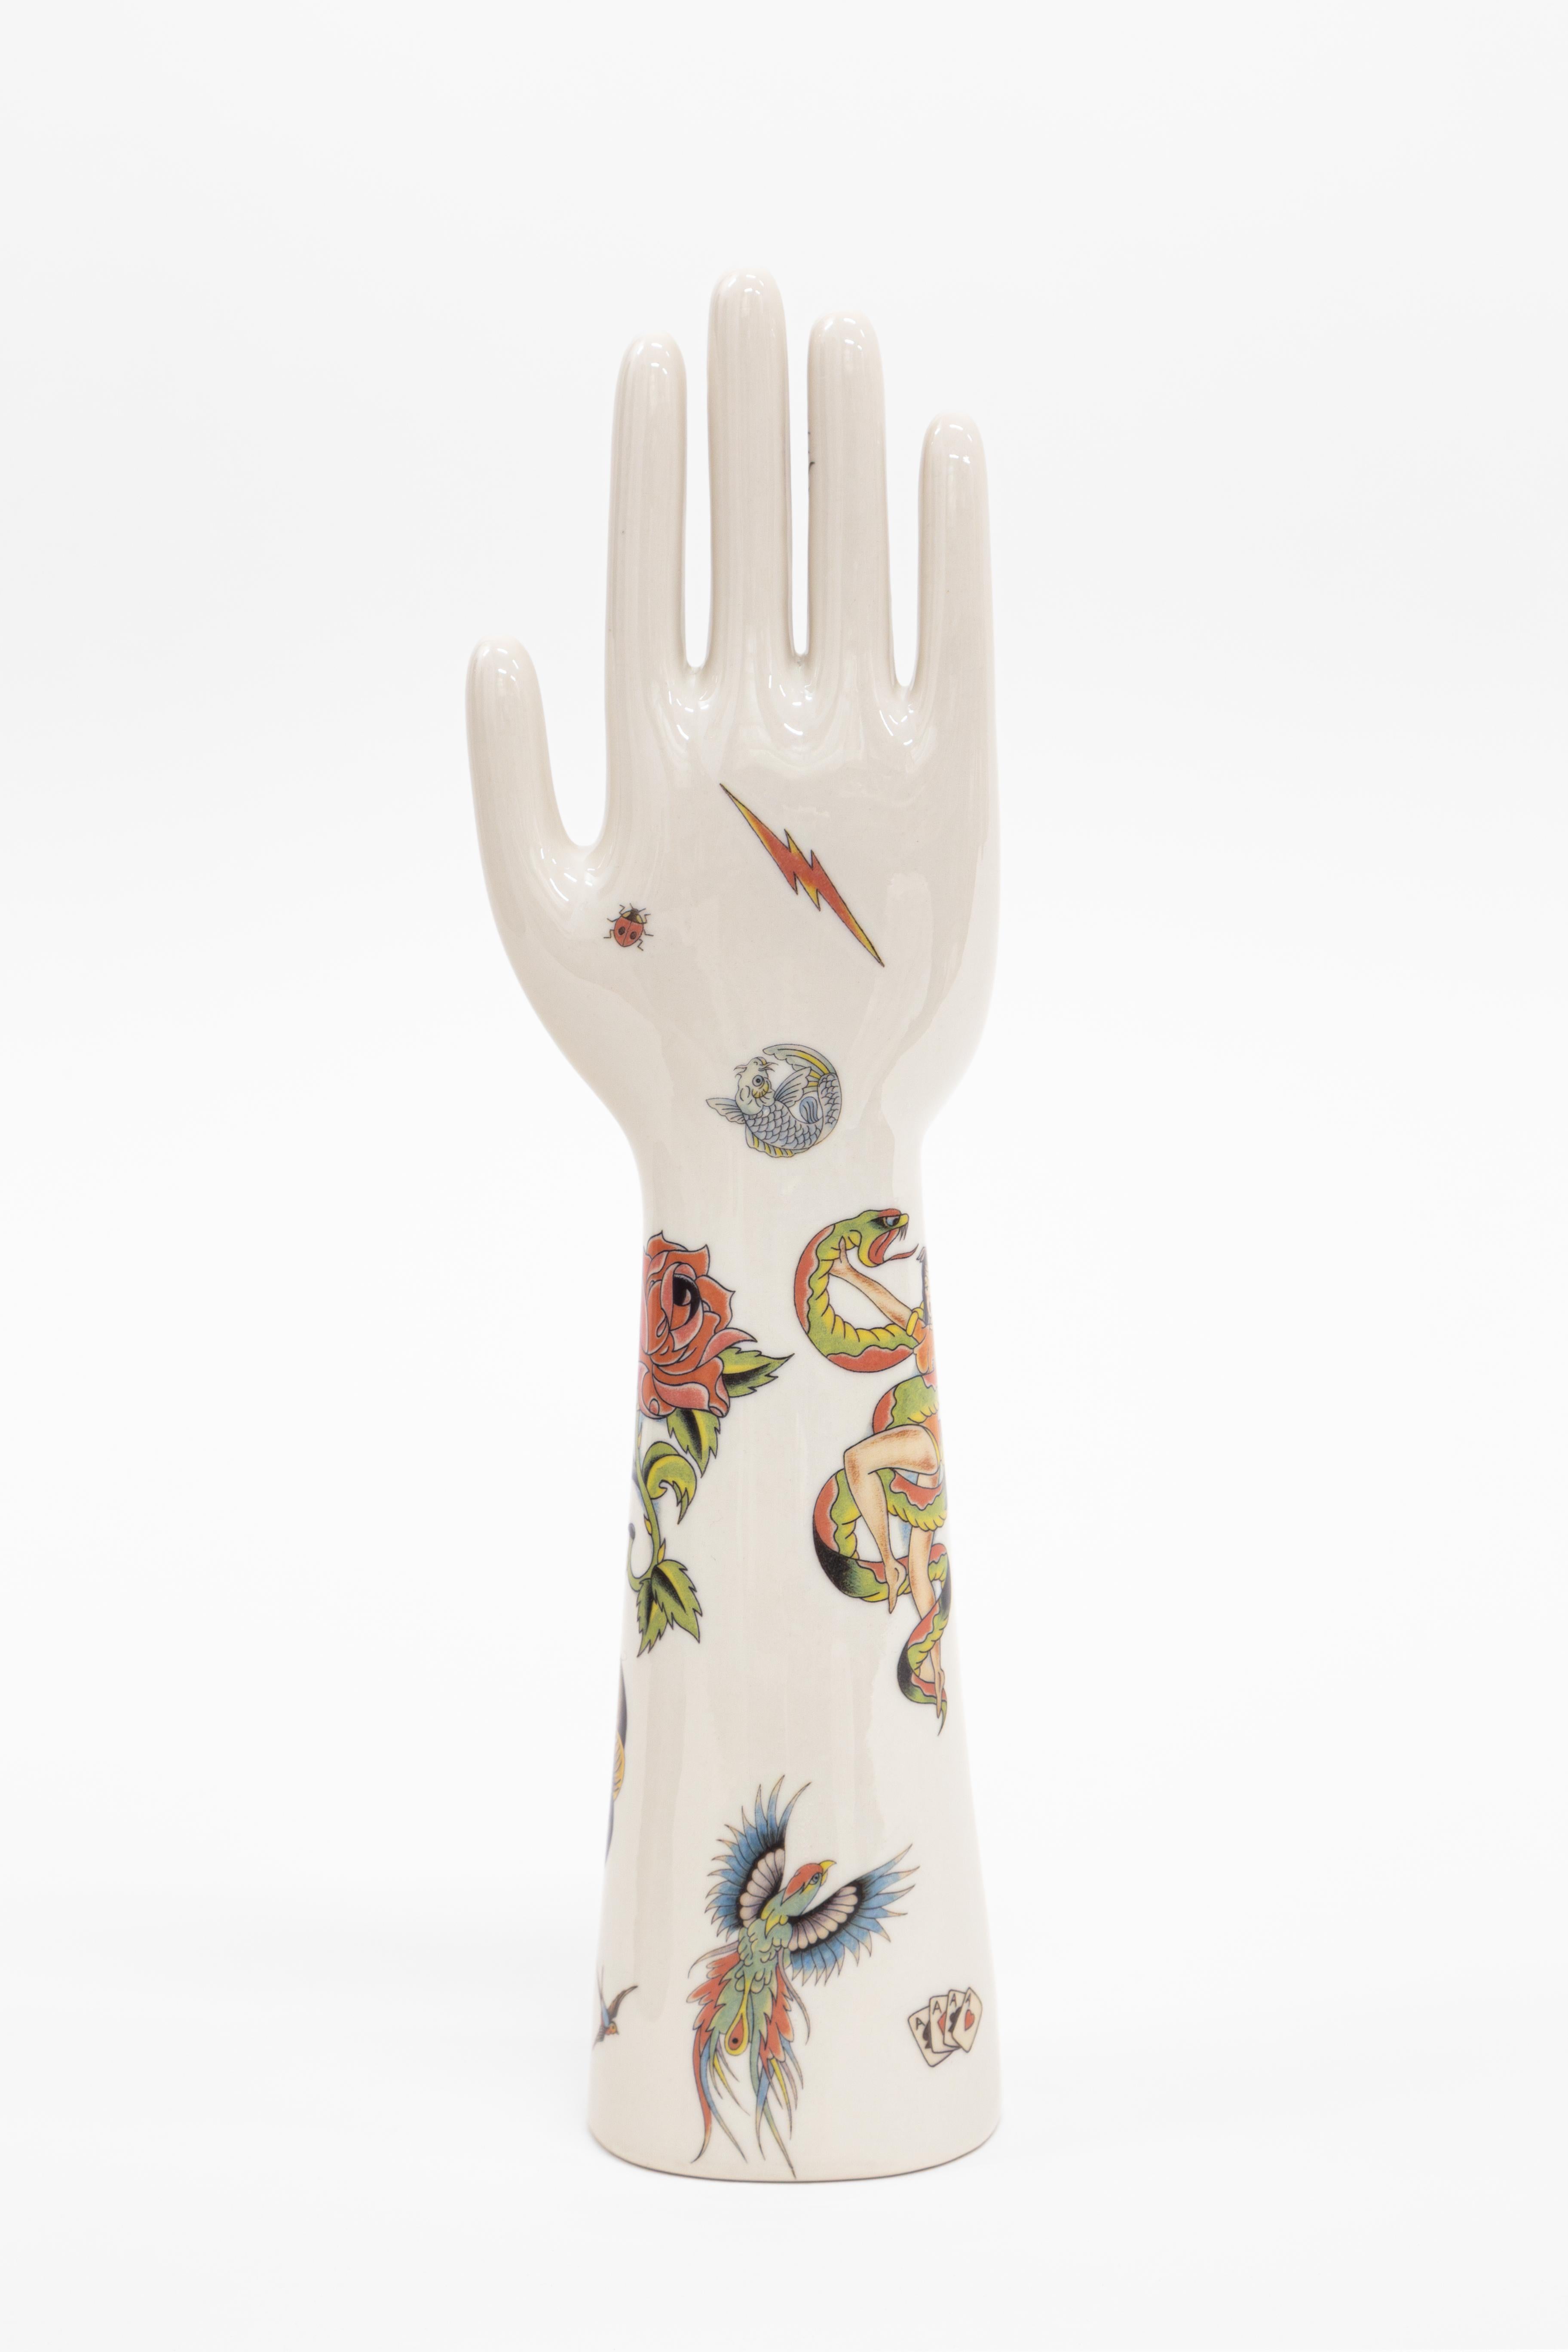 Die Porzellanhände der Kollektion Anatomica, die Vito Nesta für seine Marke Grand Tour entworfen hat, sind ein intramontabiles Designobjekt von hohem dekorativem Wert. Die Herstellung dieser Schweine ist den Fratelli Majello zu verdanken, die seit